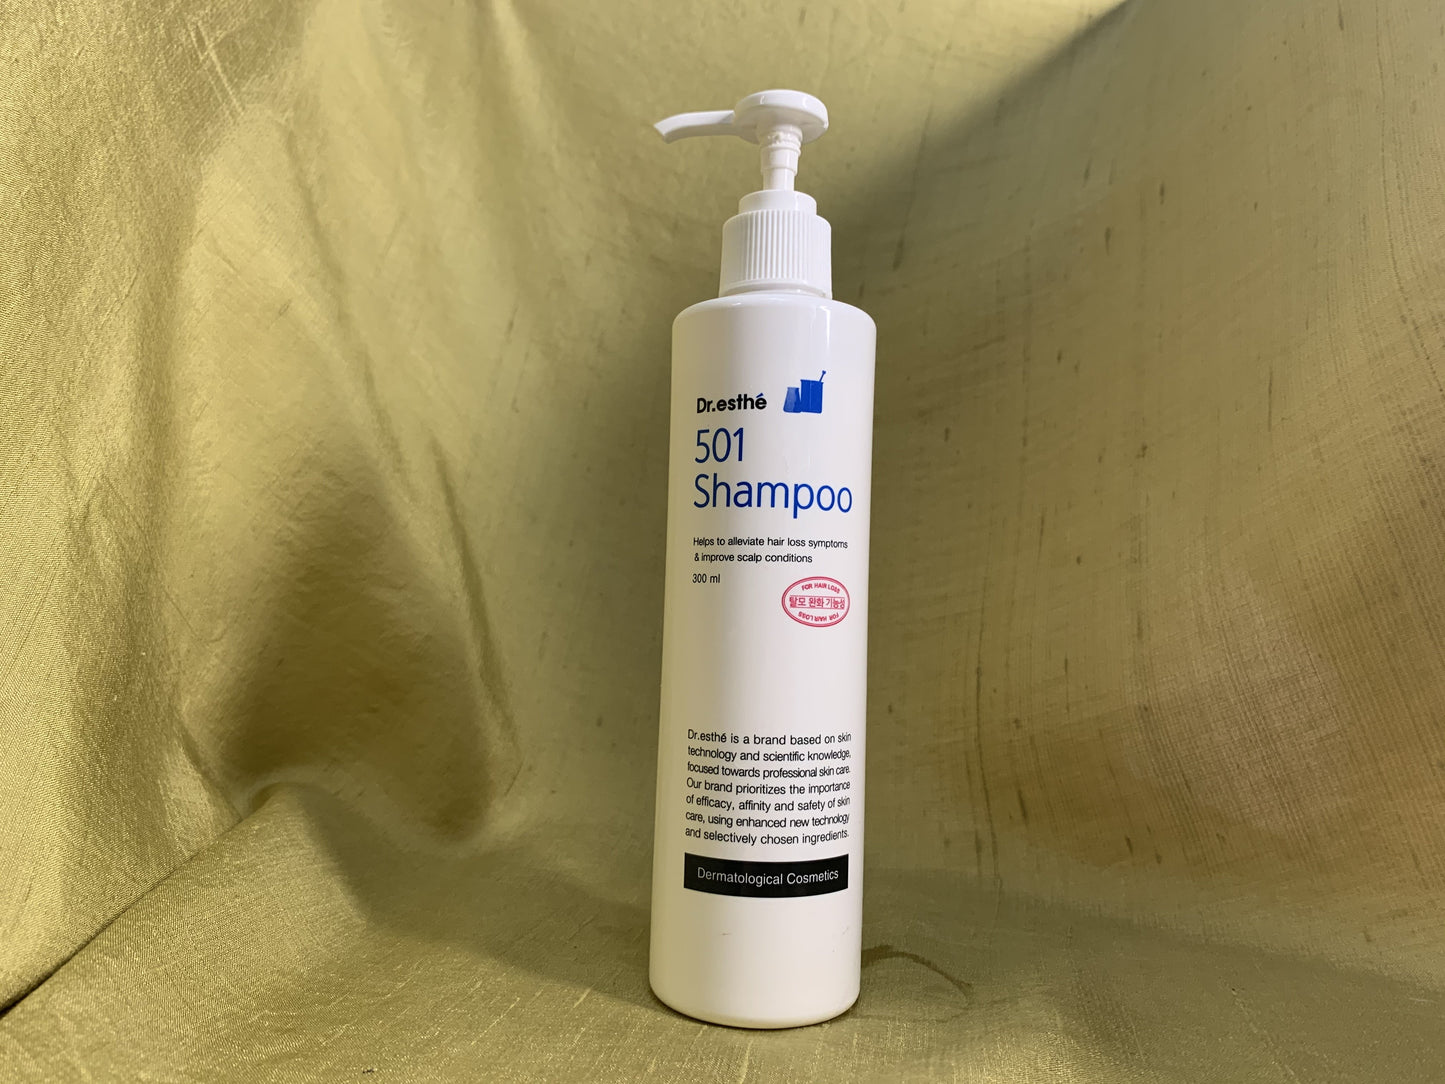 Dr. Esthé 501 Hair Growth Shampoo